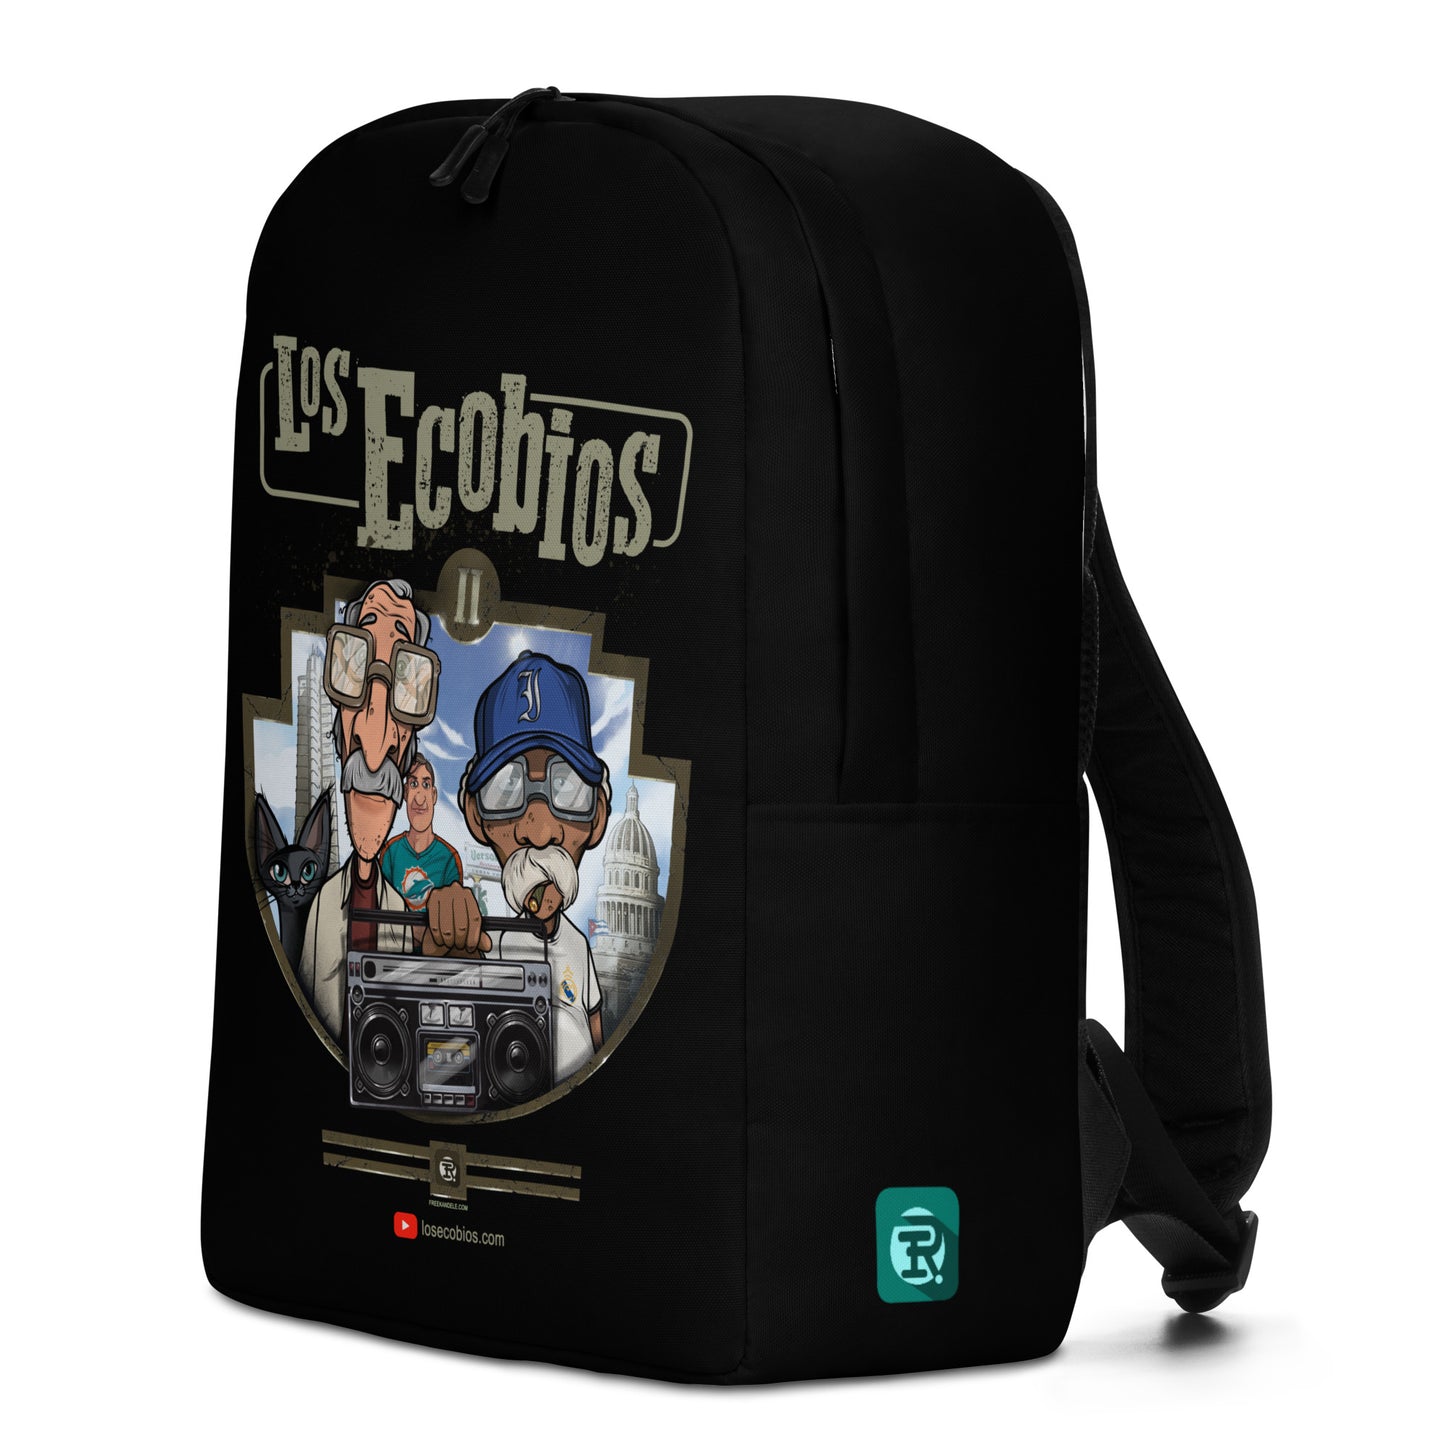 "Los Ecobios" Duo Backpack